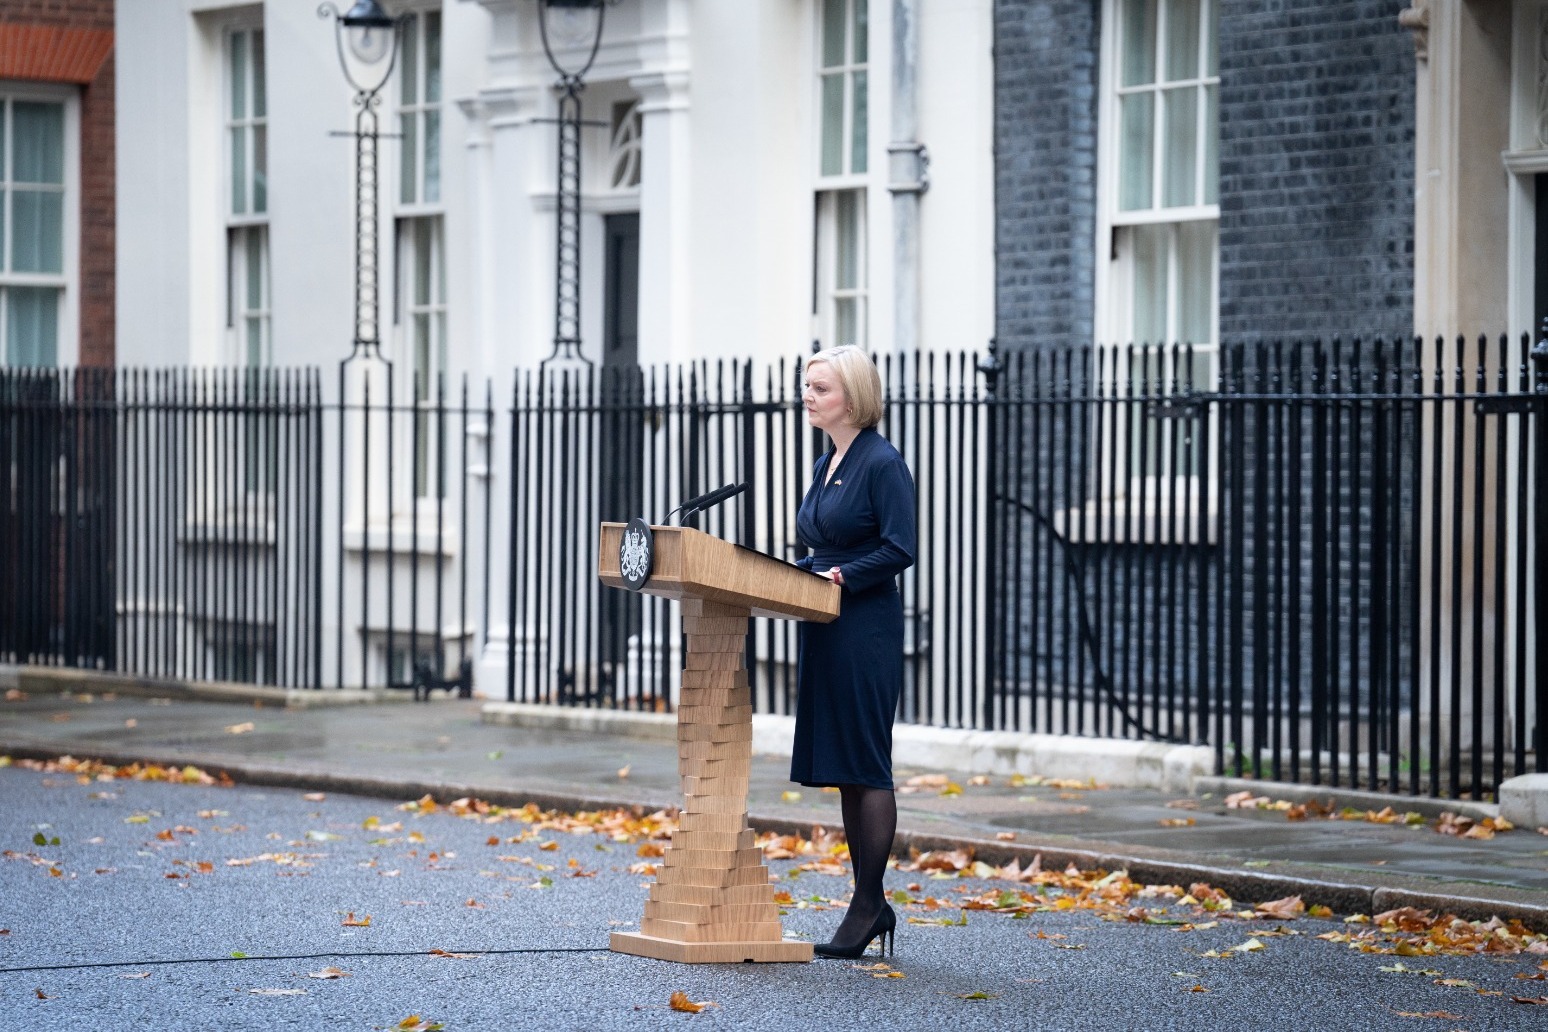 World’s media assess Liz Truss’s demise and UK political turmoil 